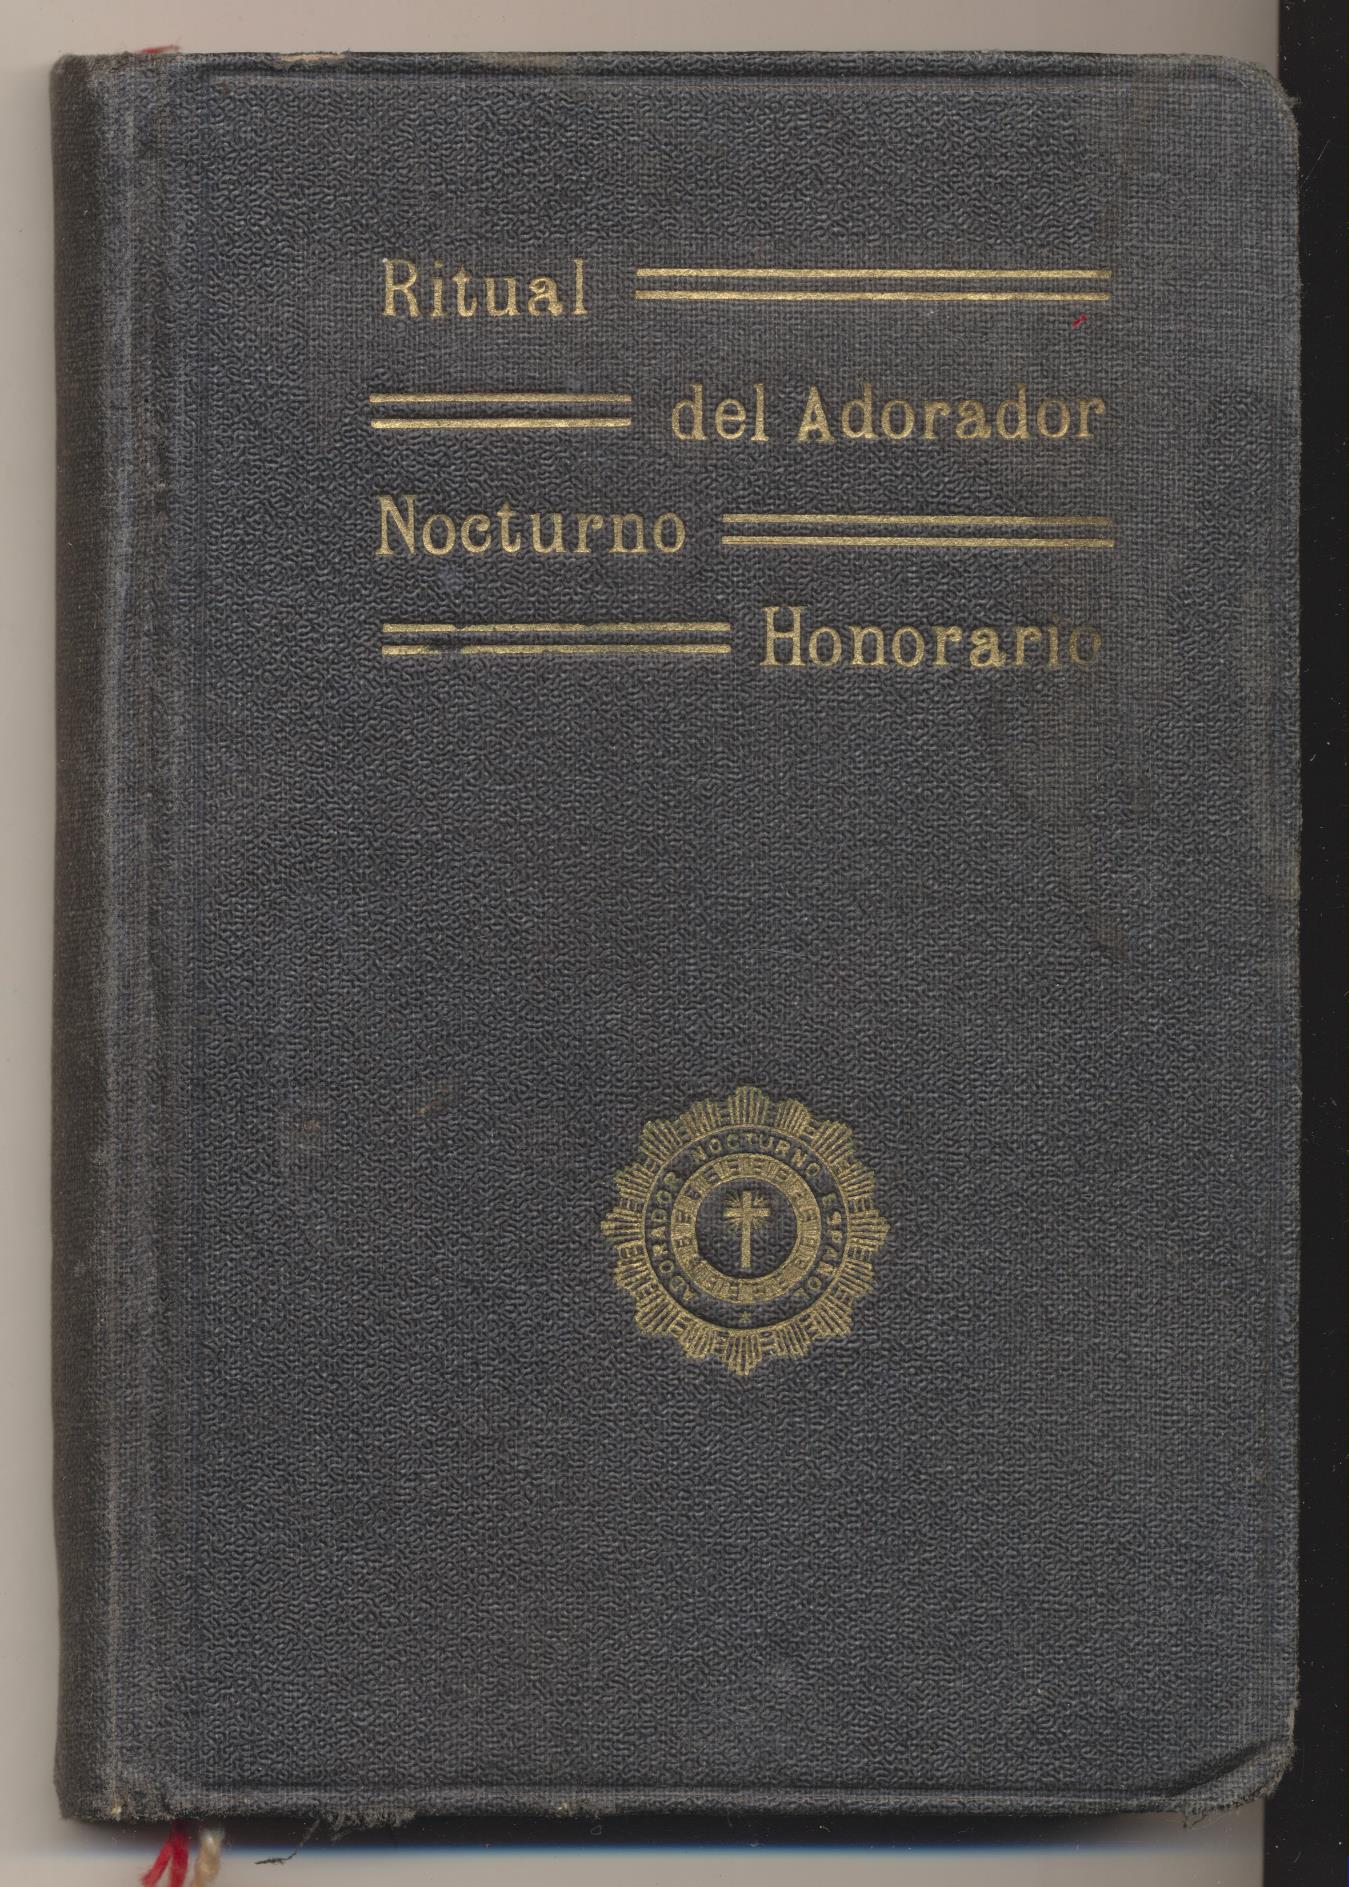 Ritual del Adorador Nocturno Honorario. Madrid 1928